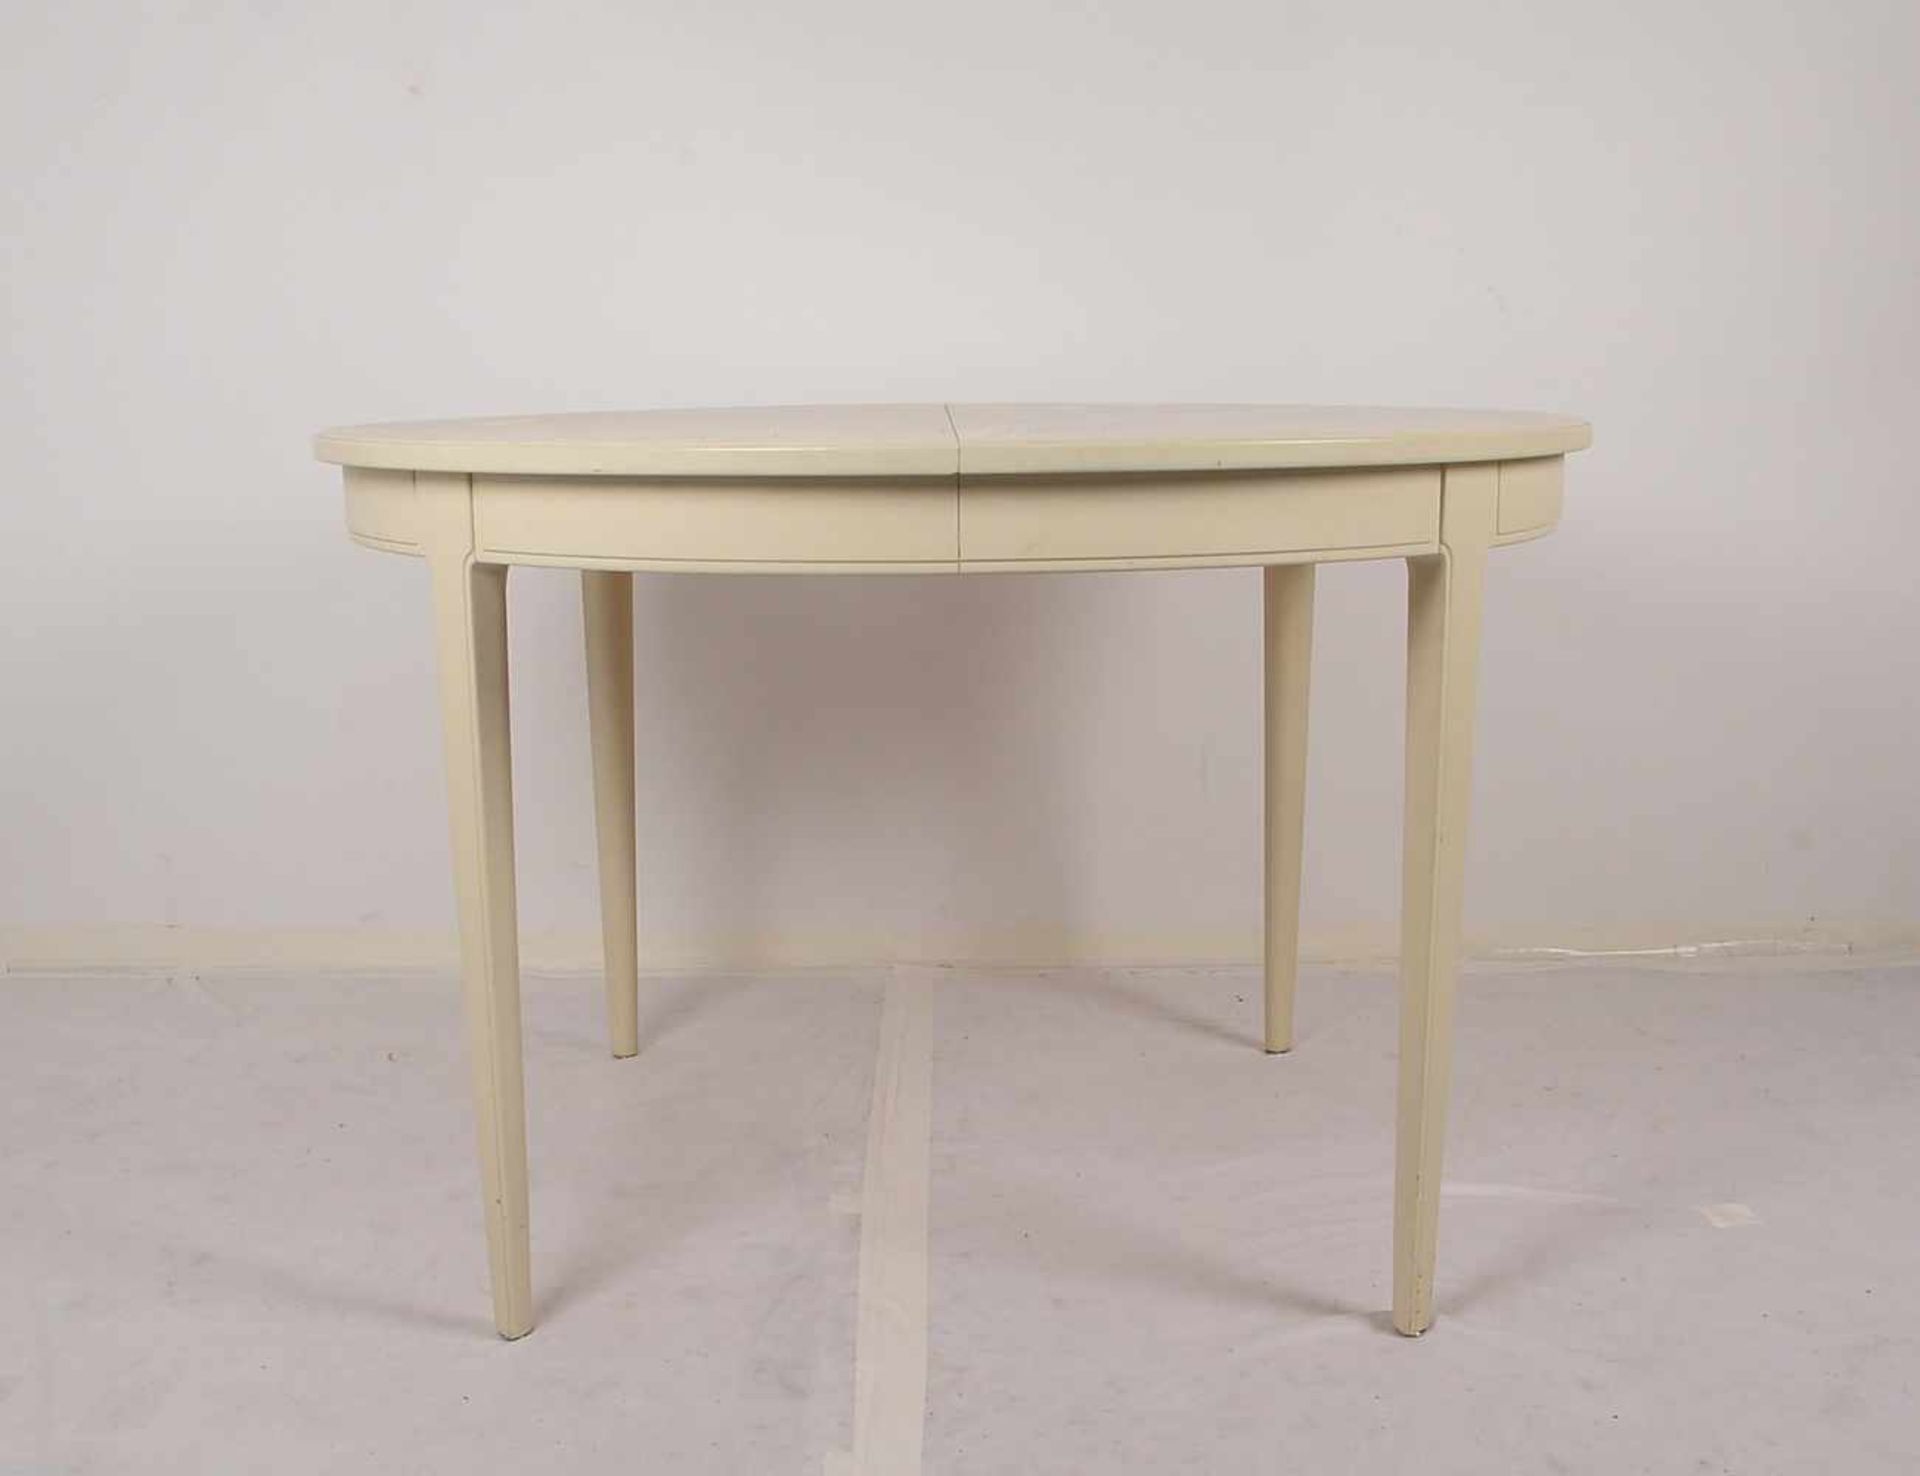 Bodafors/Schweden, Tisch, runde Form, creme-weiß gefasst, Entwurf: Carl Malmsten, ausziehbar - - Bild 3 aus 3